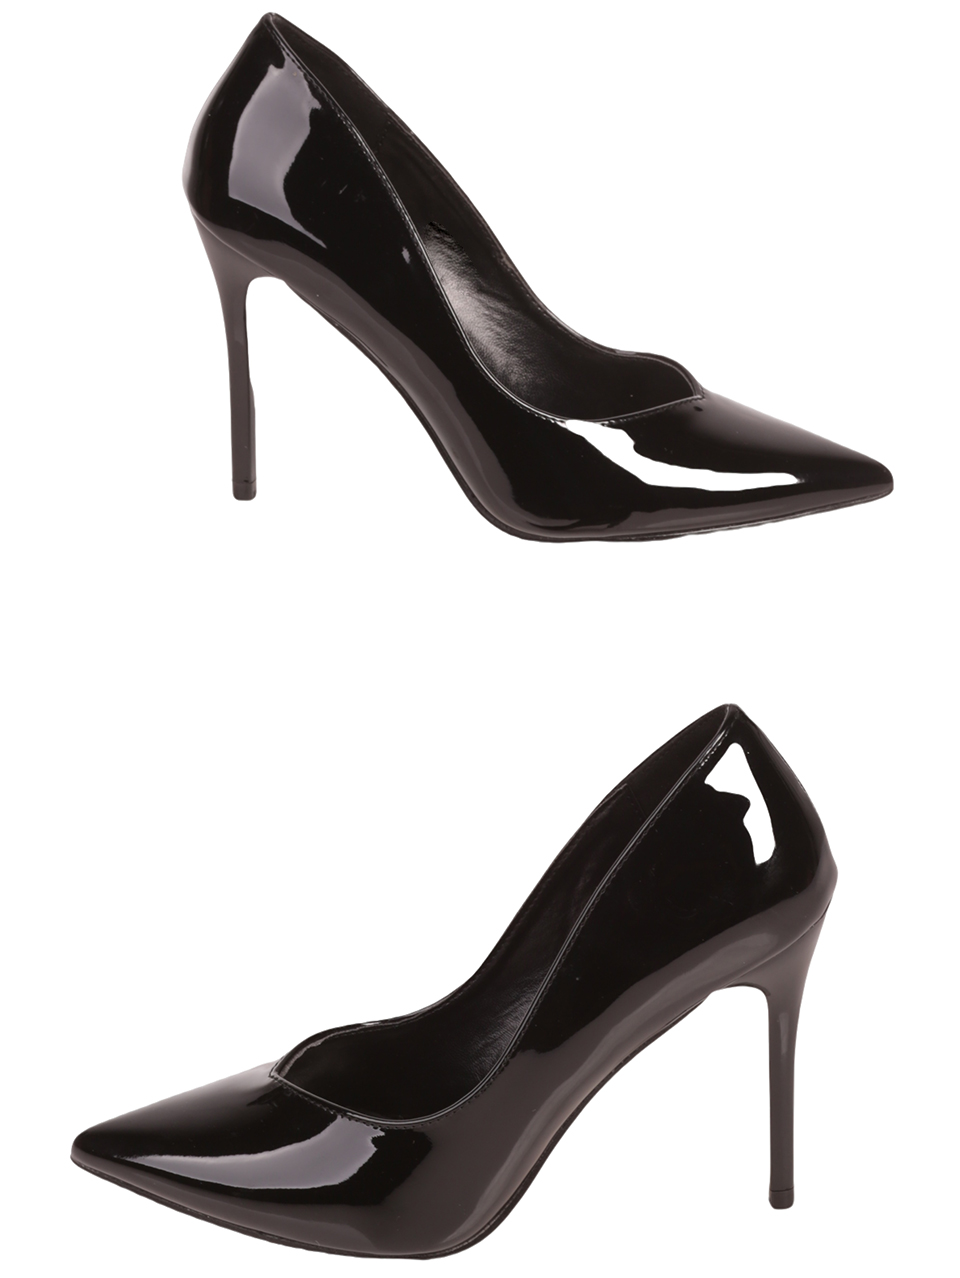 Елегантни дамски лачени обувки в черно 3M-23551 (21552) black 